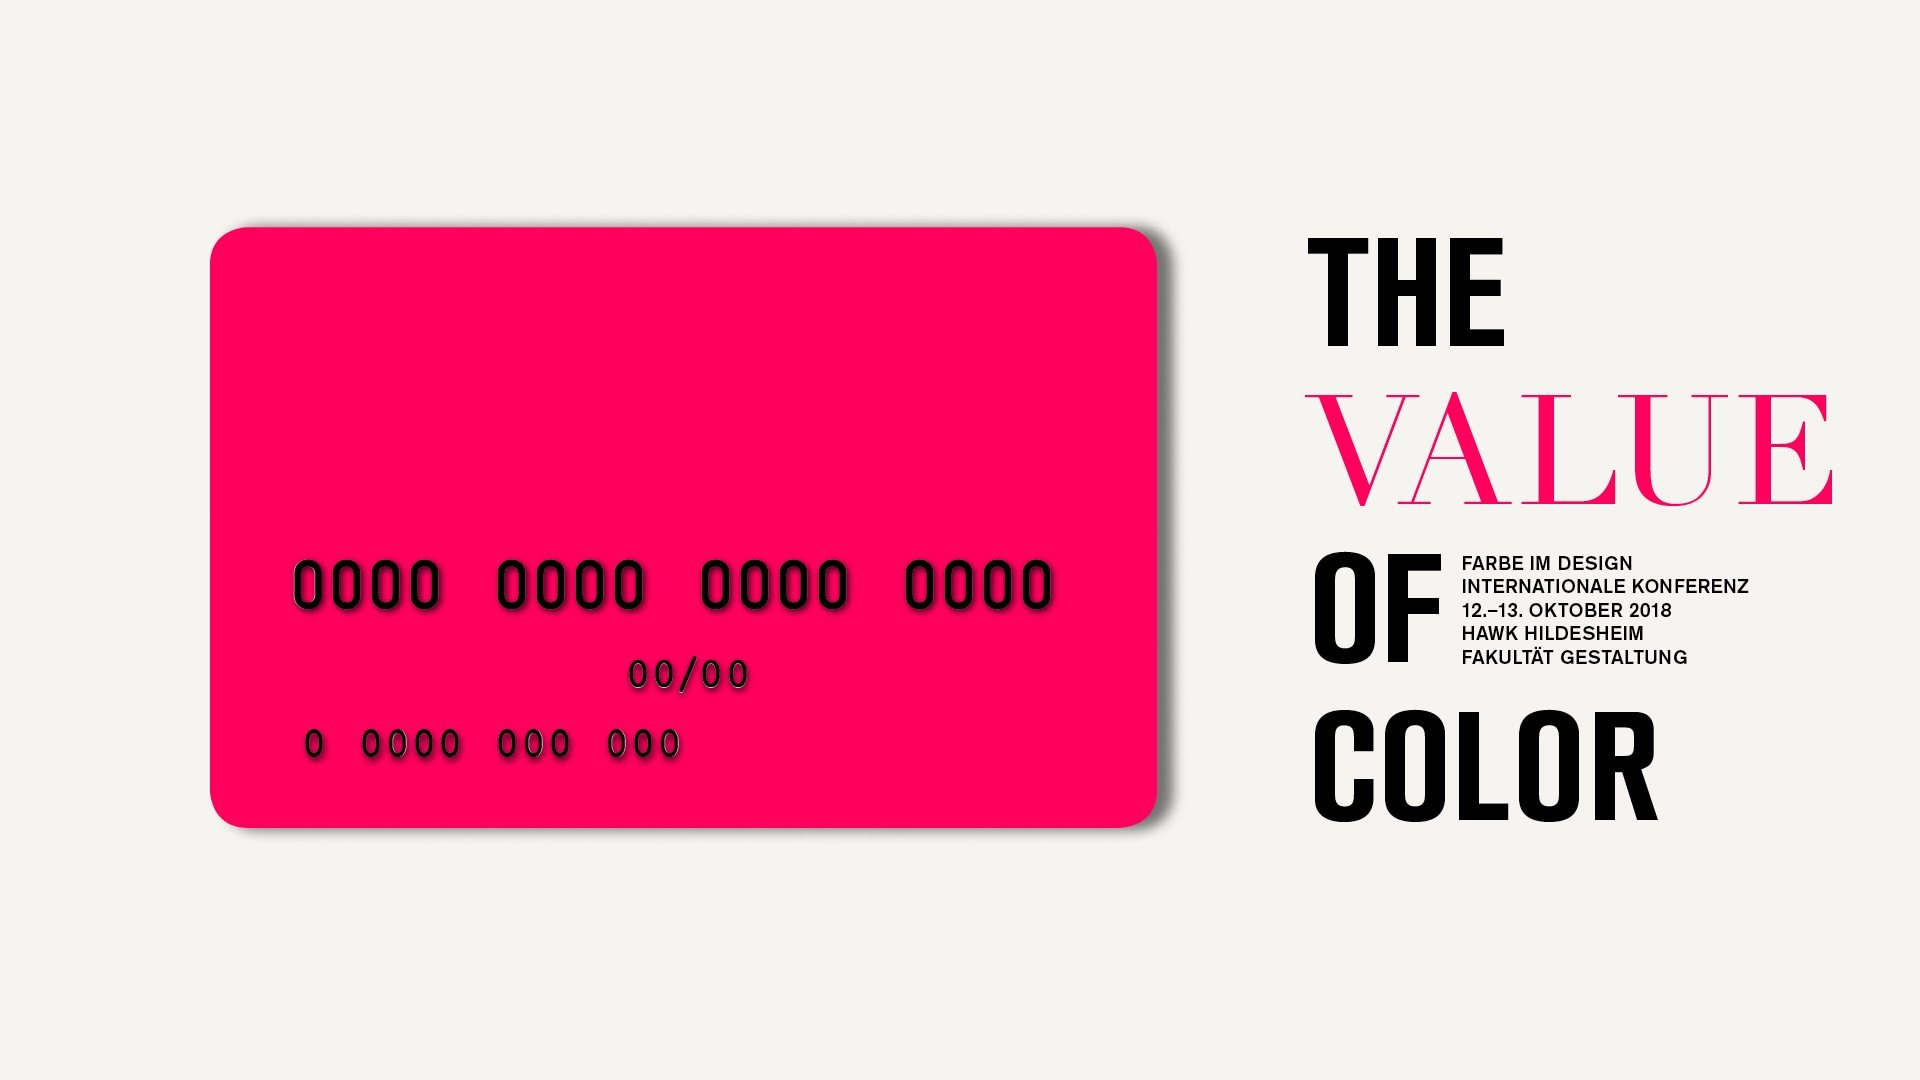 Farbe im Design – The Value of Color